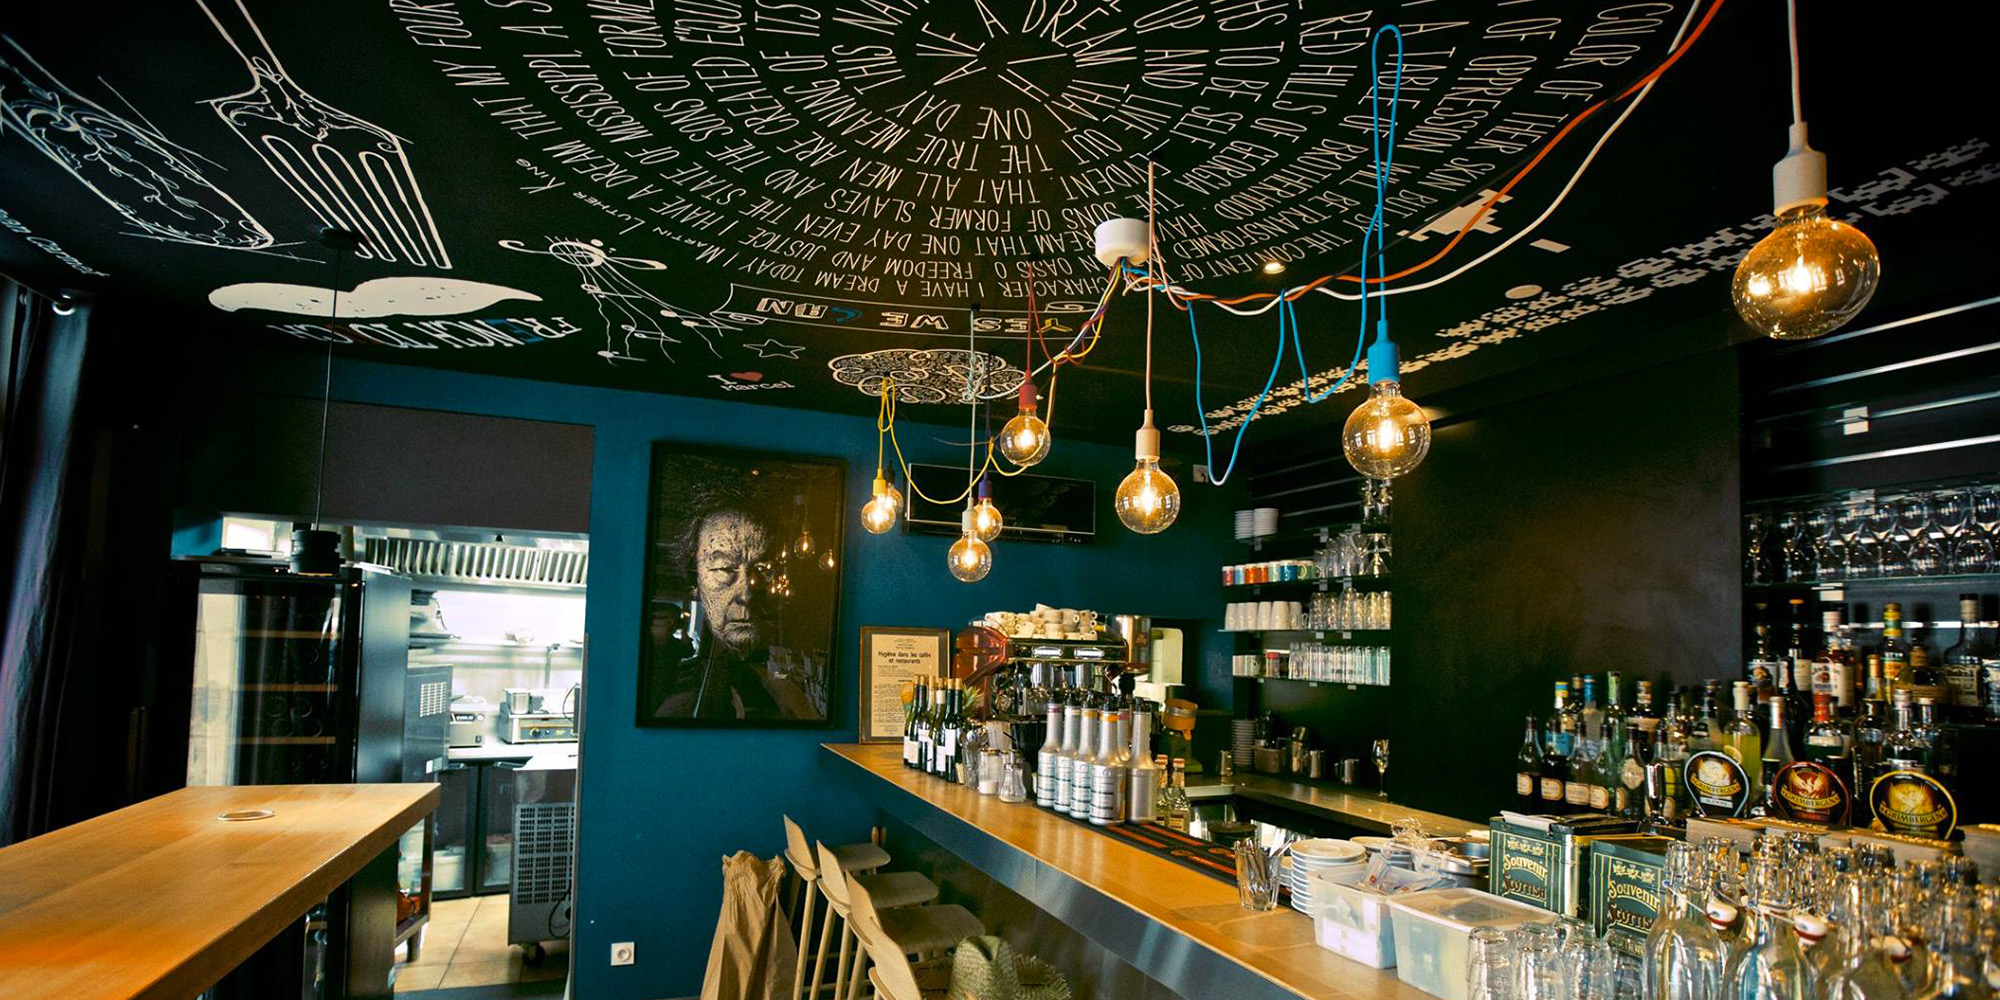 Café Marcel Tours 37, design du plafond - Beautiful Georges